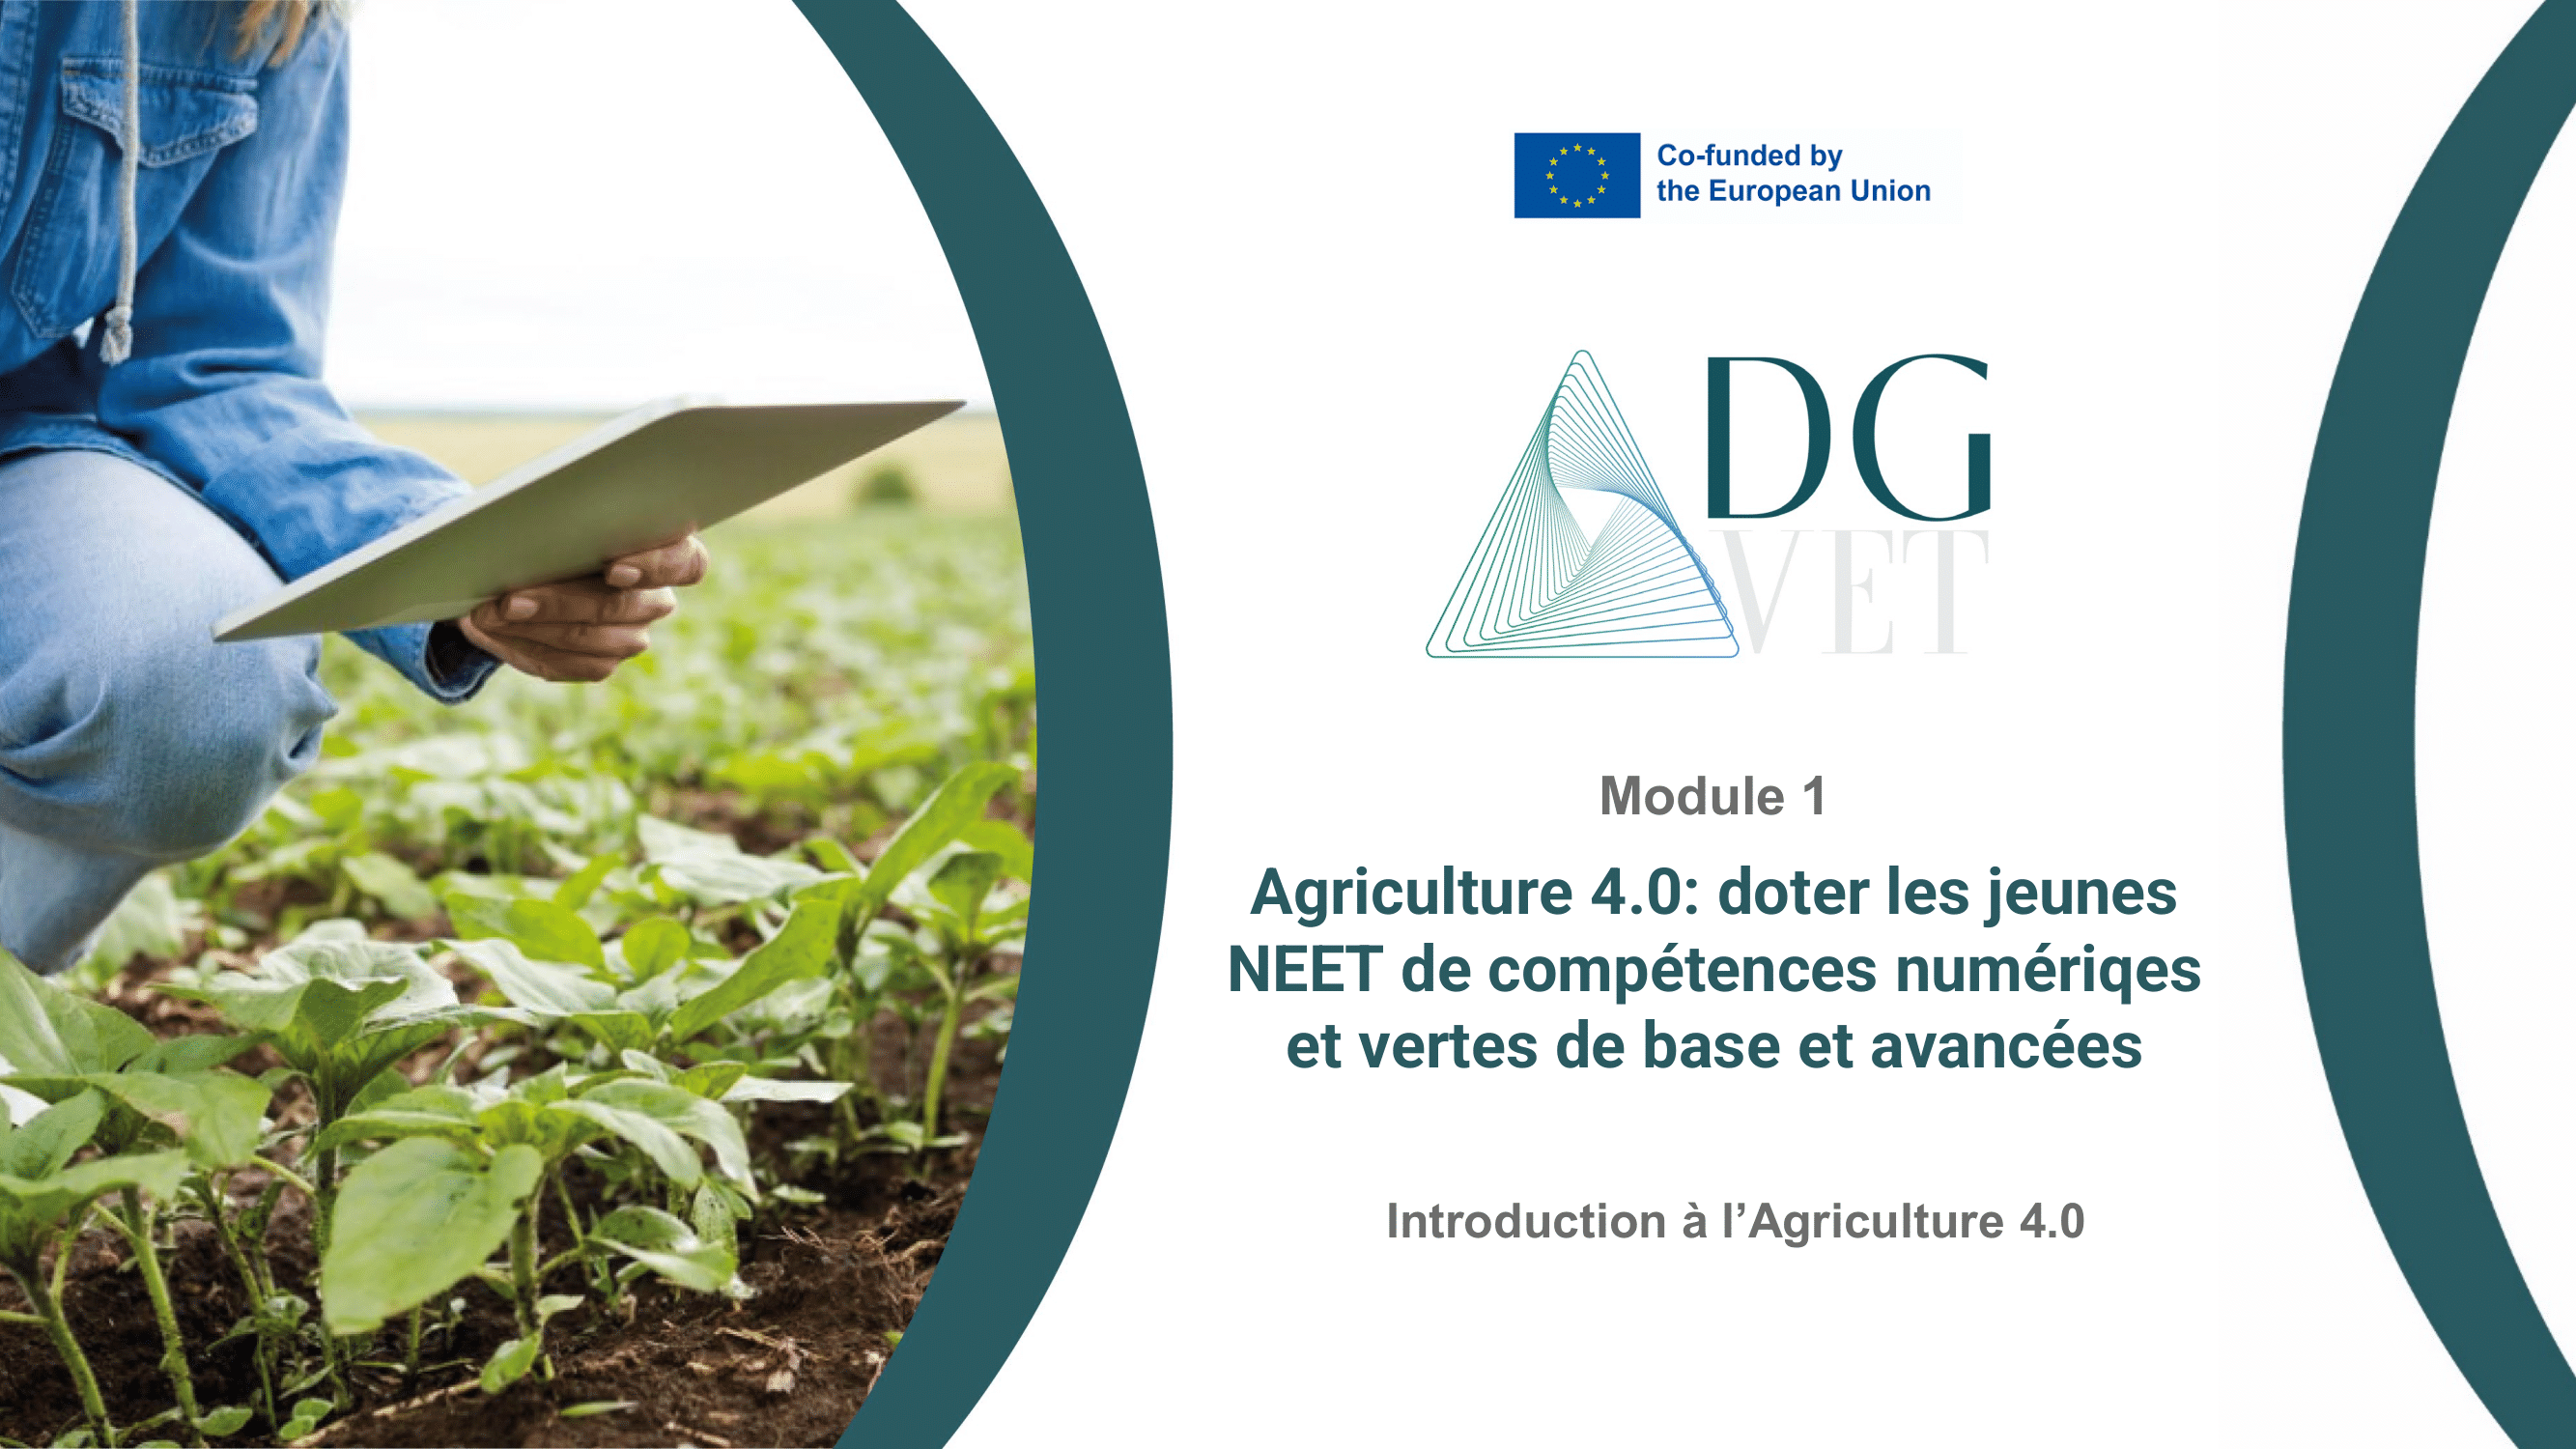 Module 1 : “Introduction à l’agriculture 4.0”.